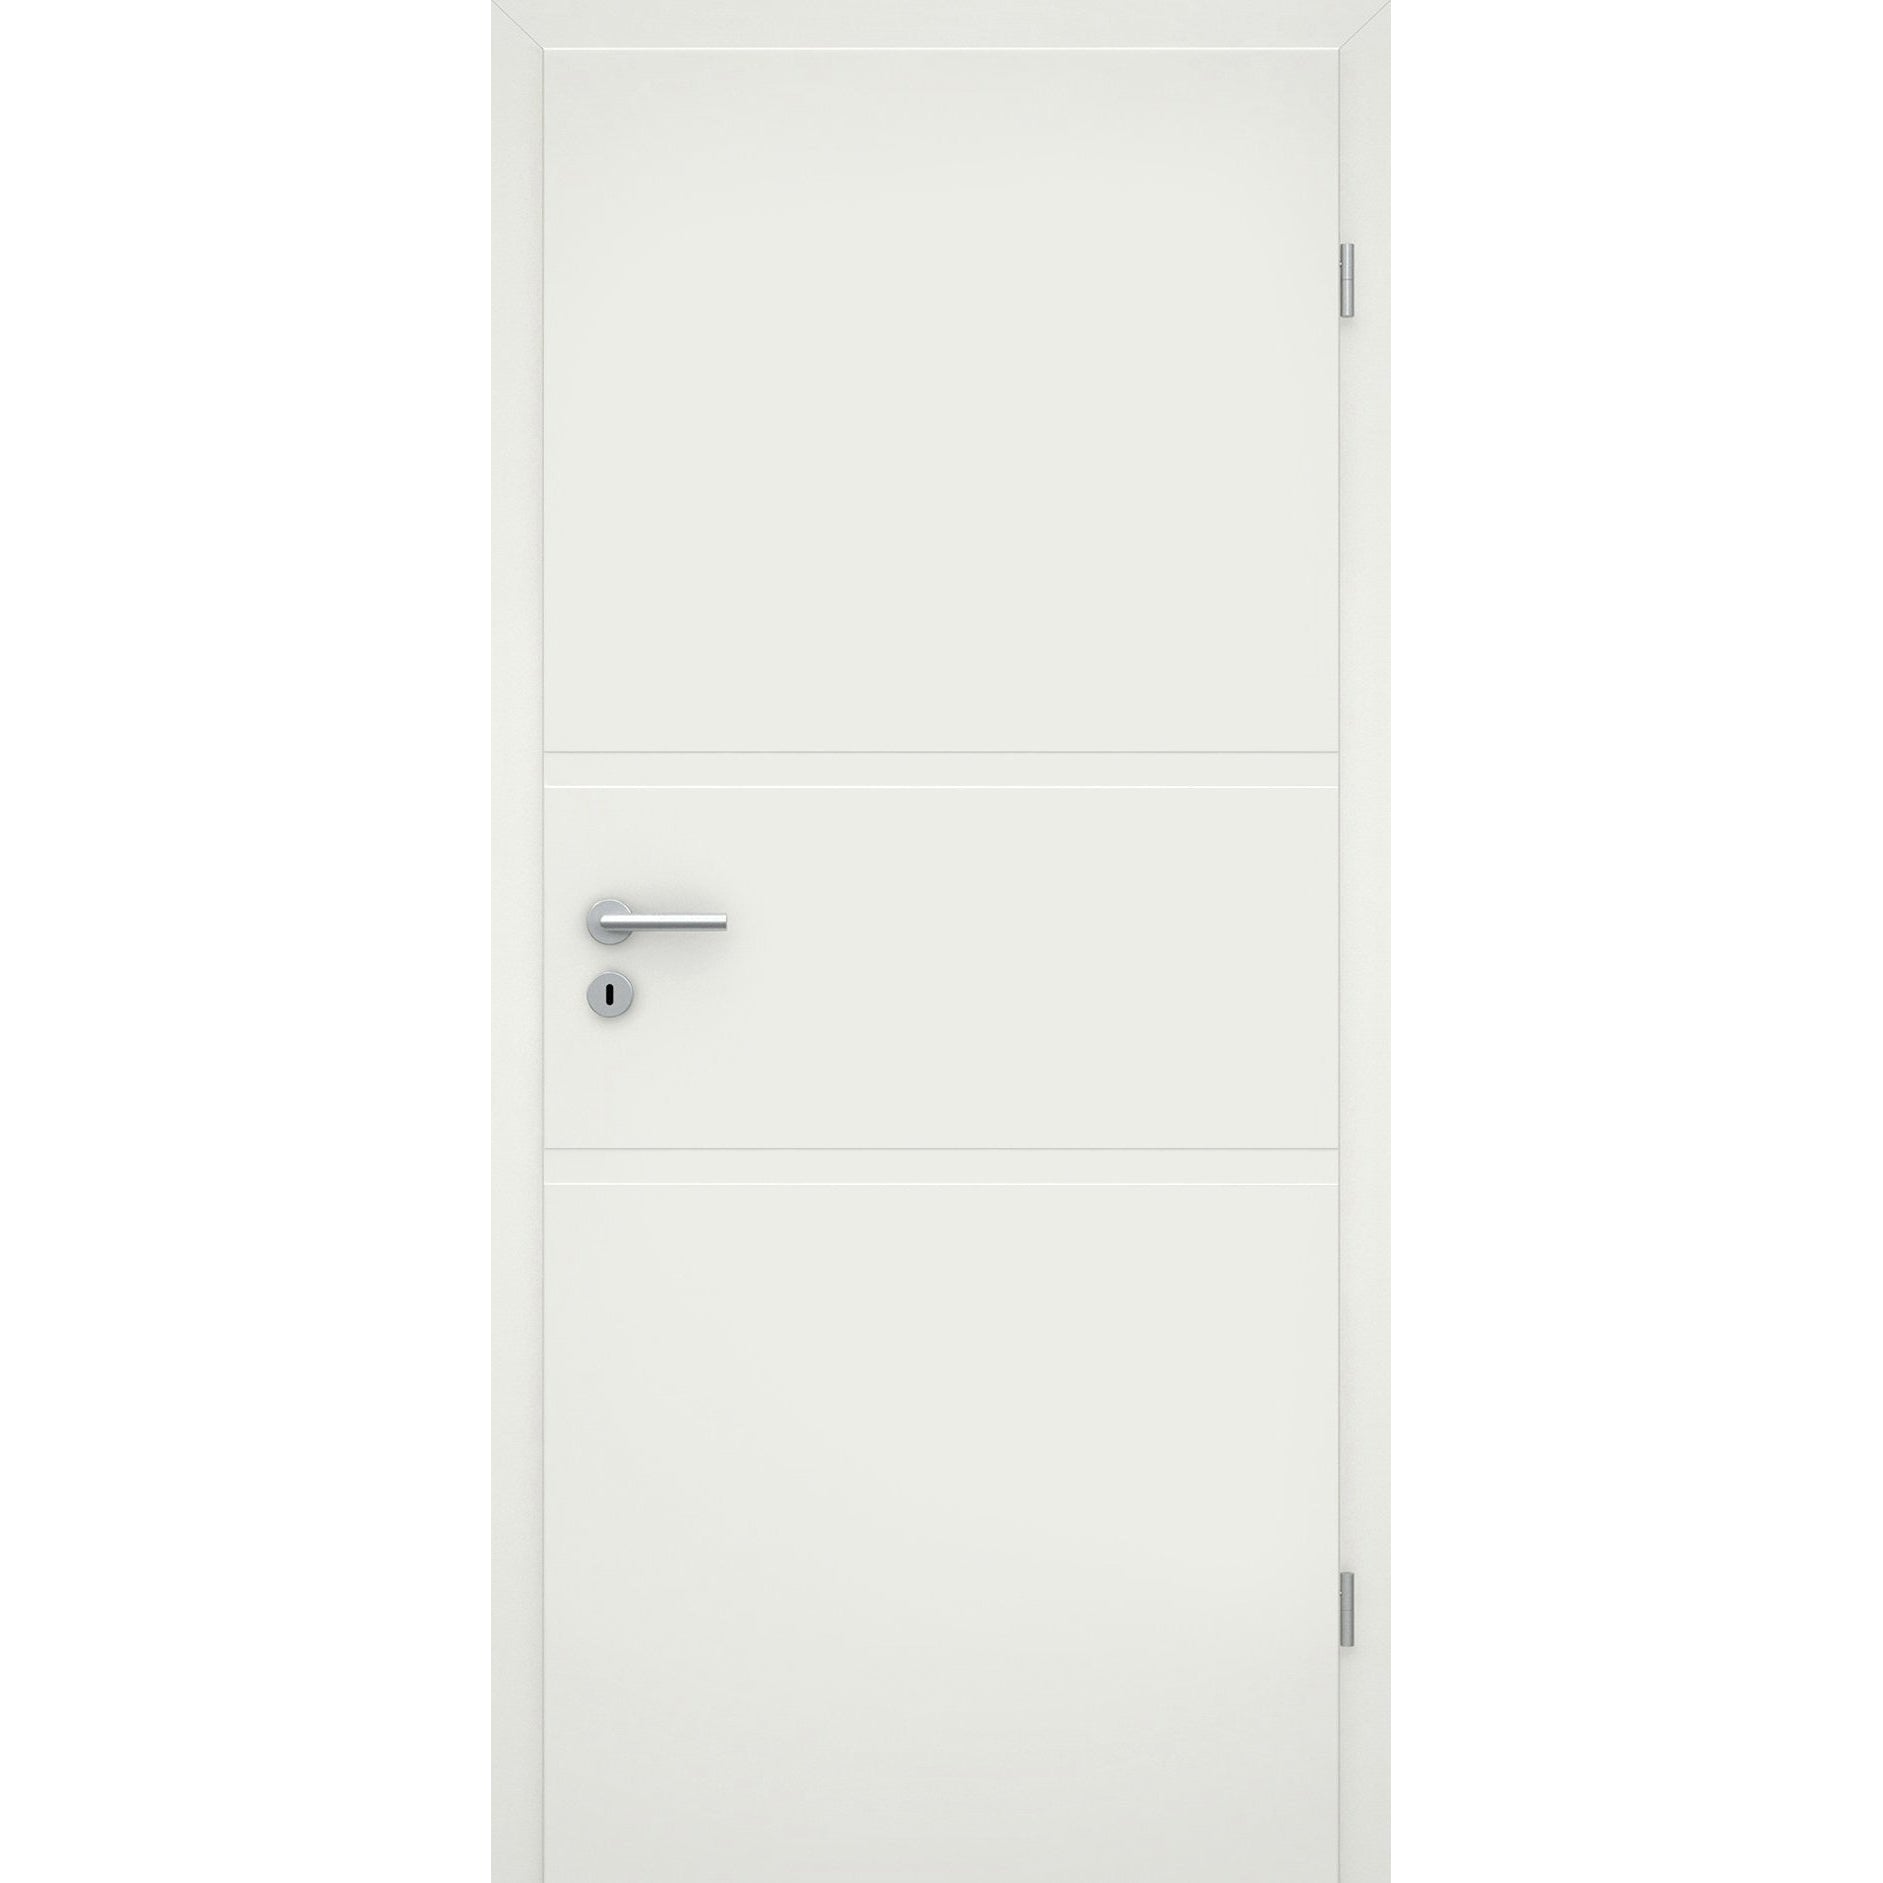 Wohnungseingangstür mit Zarge soft-weiß 2 breite Rillen Eckkante SK1 / KK3 - Modell Designtür QB21